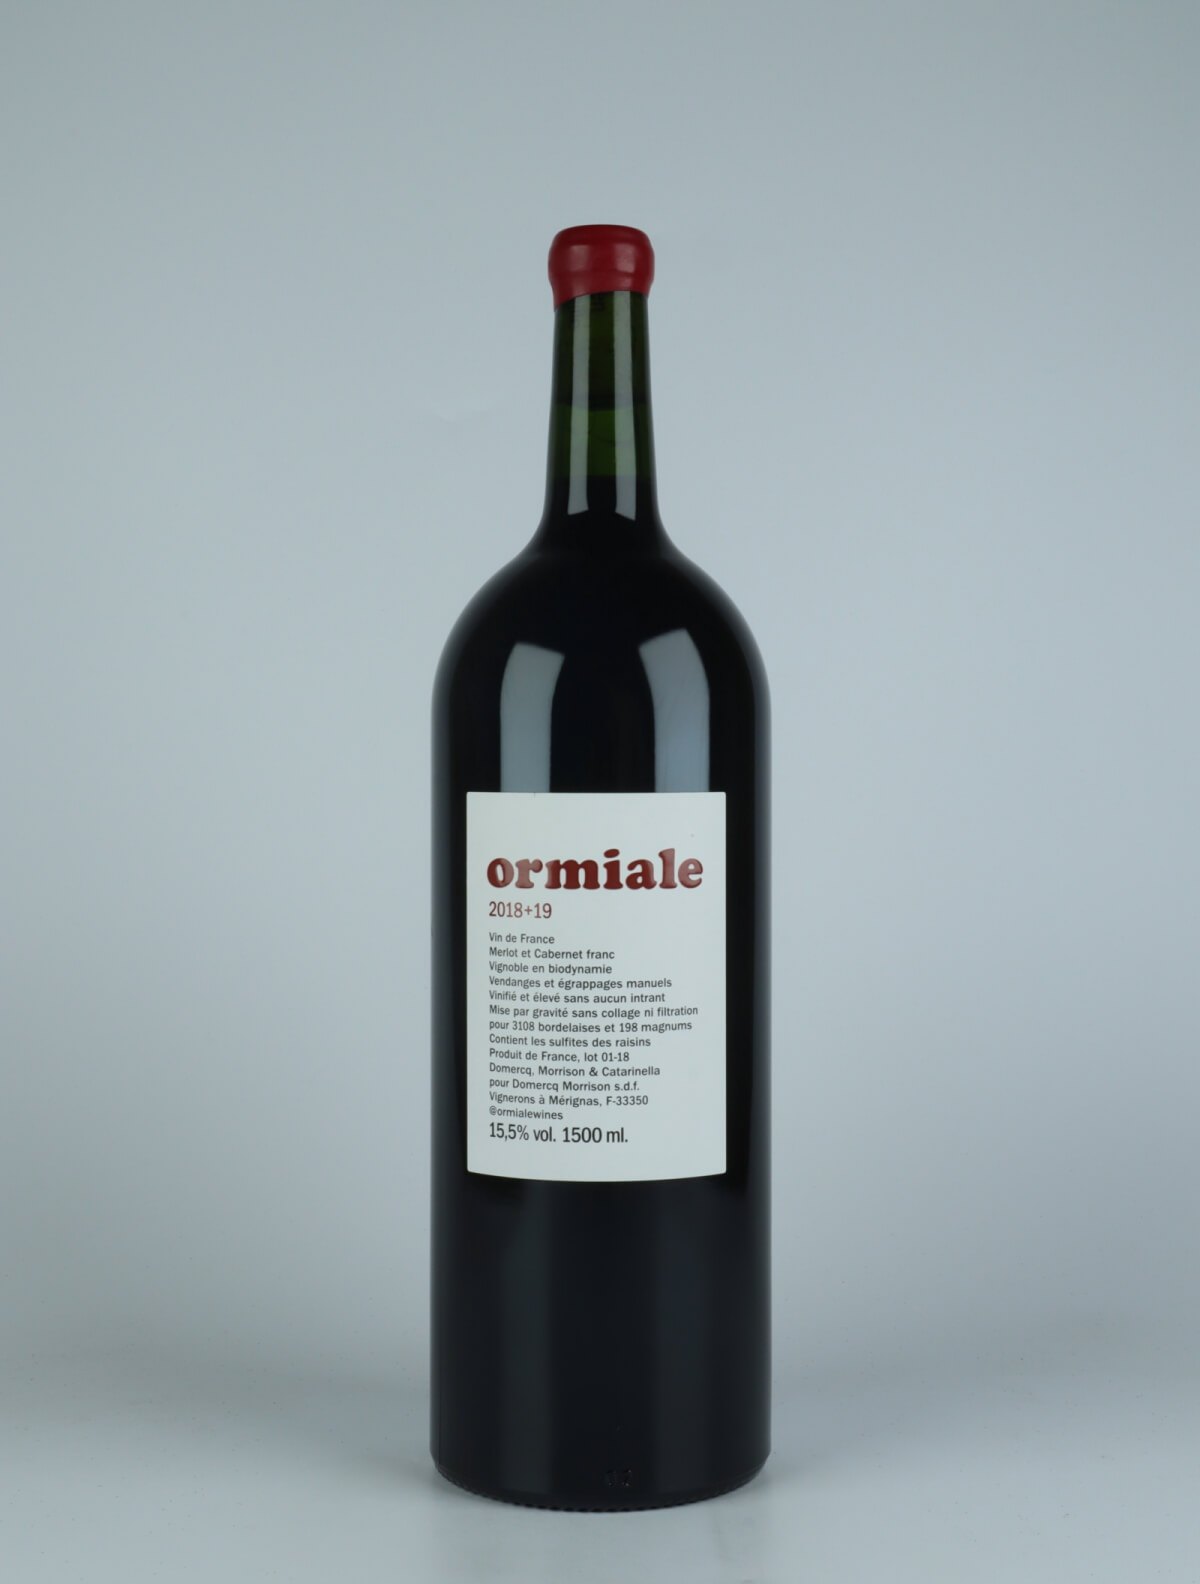 En flaske N.V. Ormiale (18+19) Rødvin fra Ormiale, Bordeaux i Frankrig